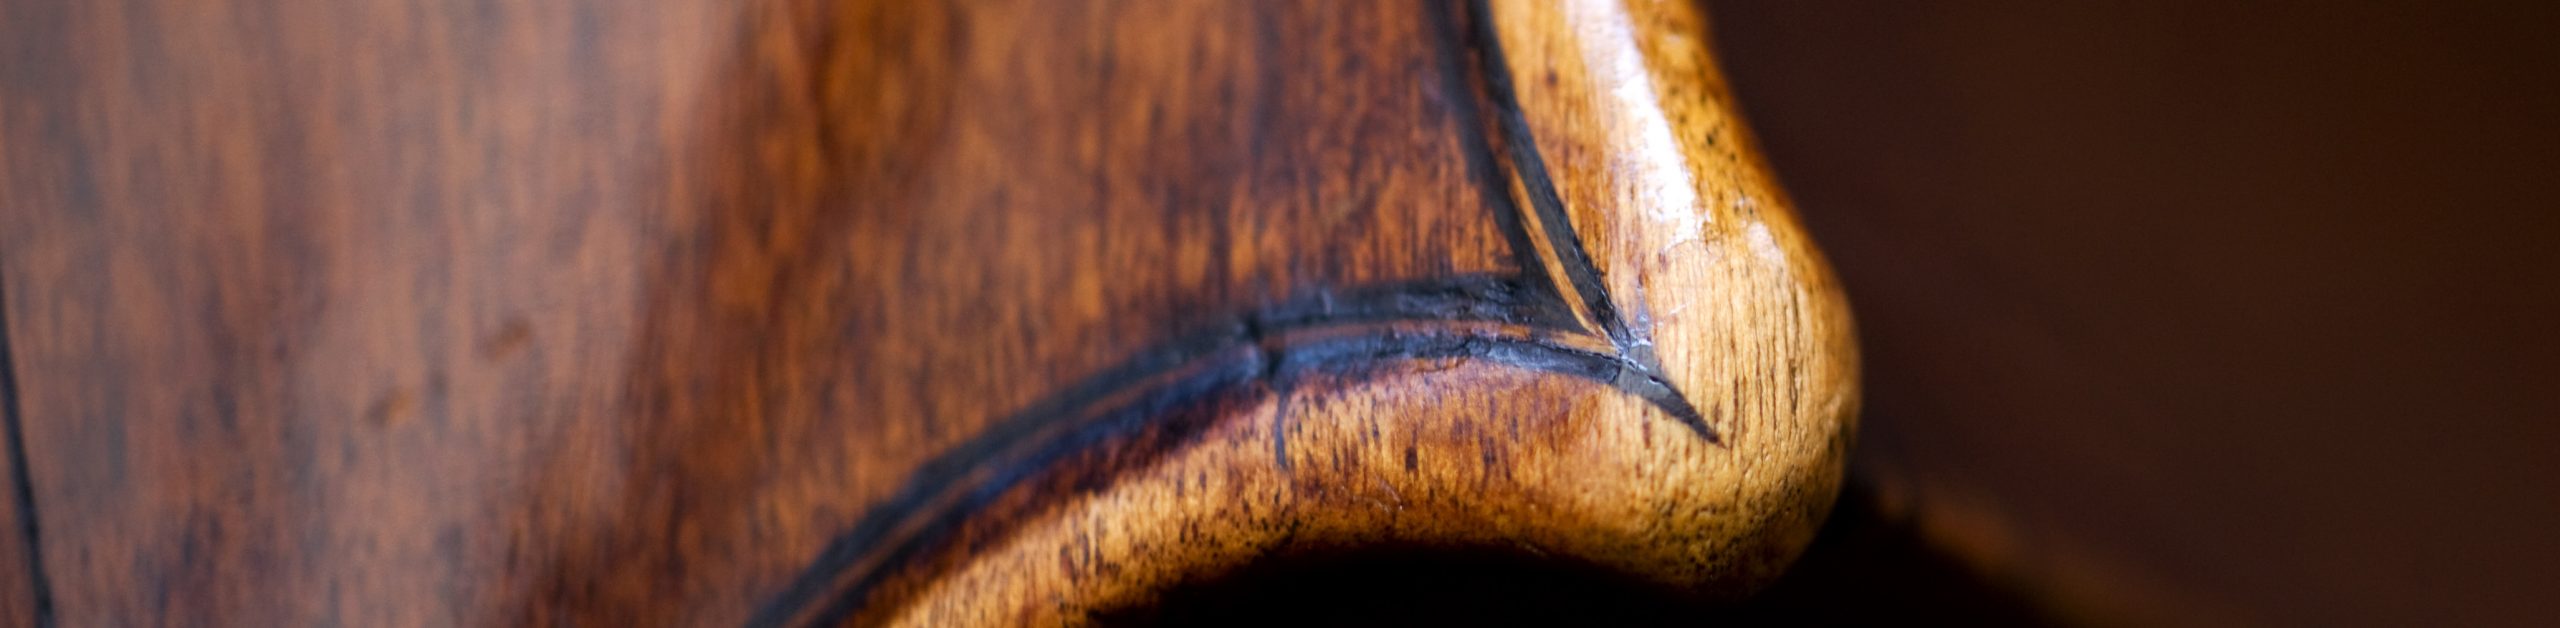 Stradivari Cello Detail